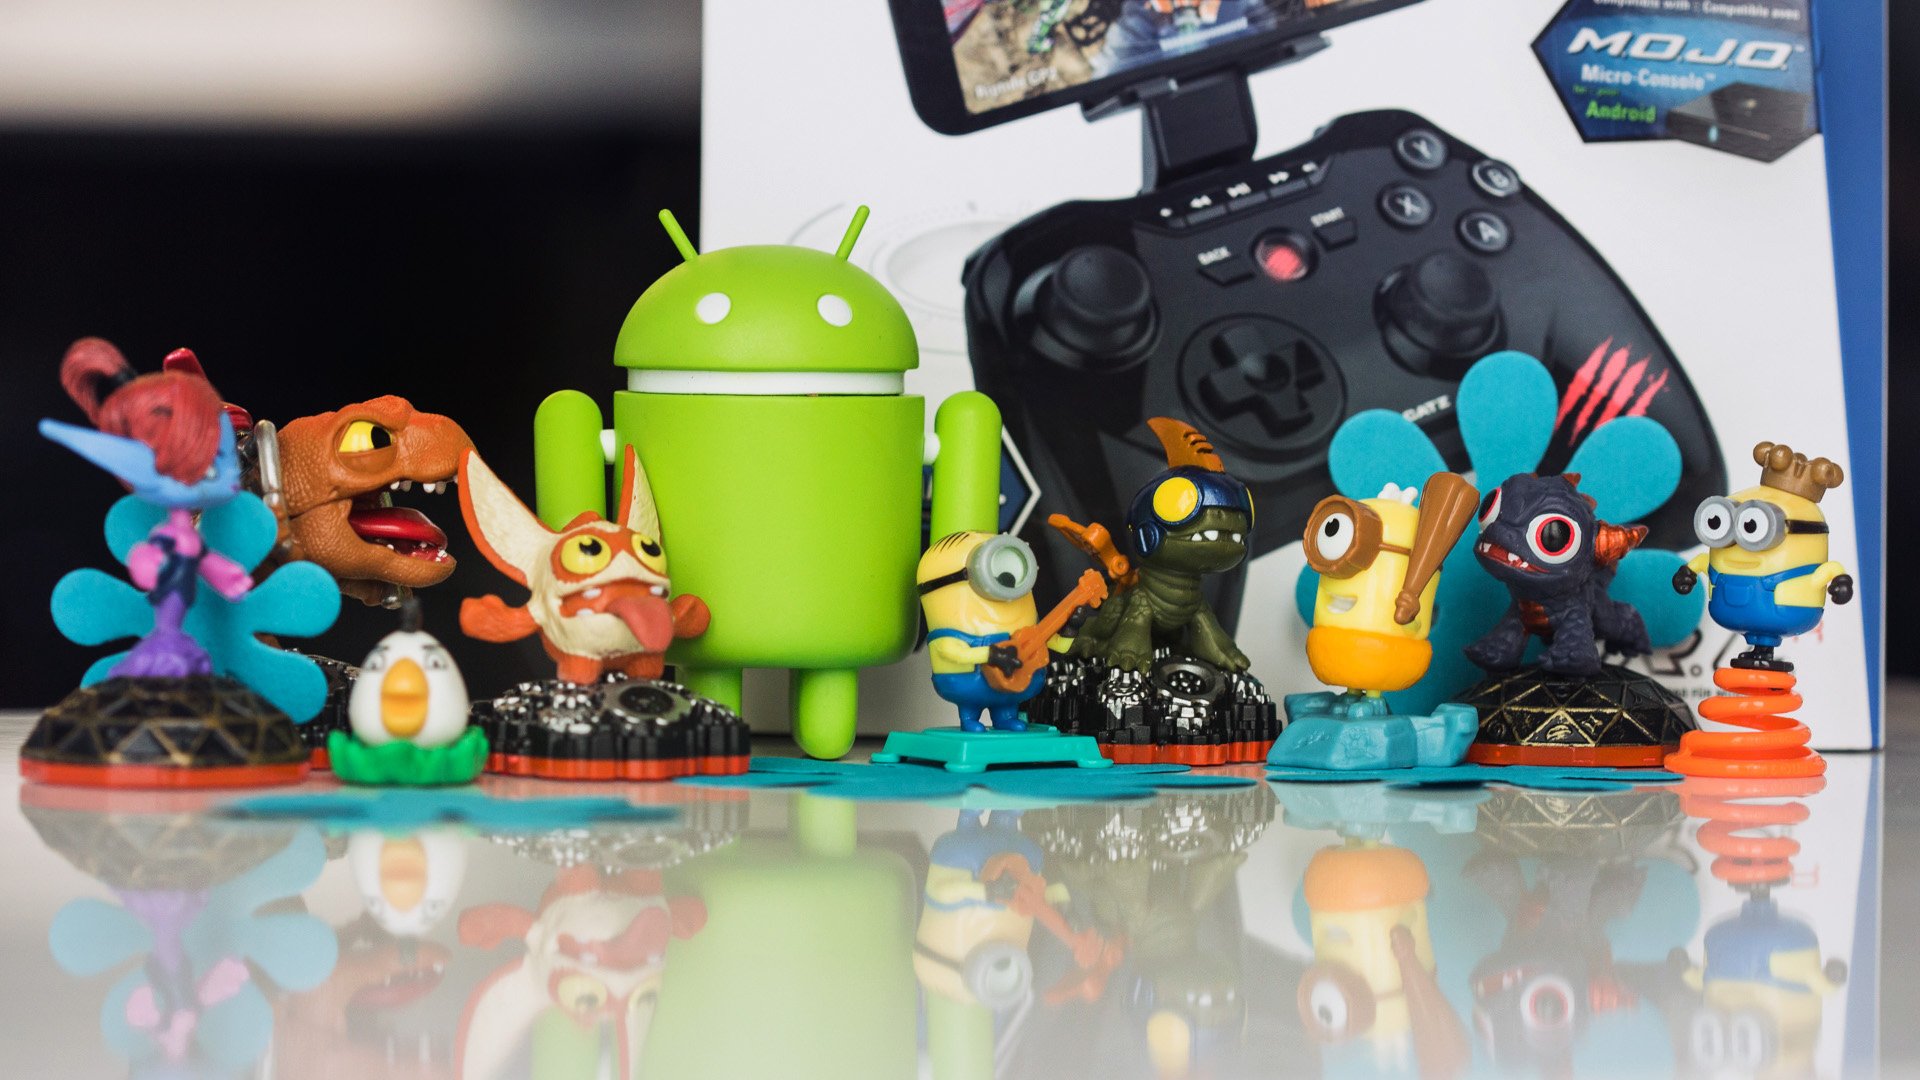 Los Mejores Juegos Android Que Comience La Partida Androidpit